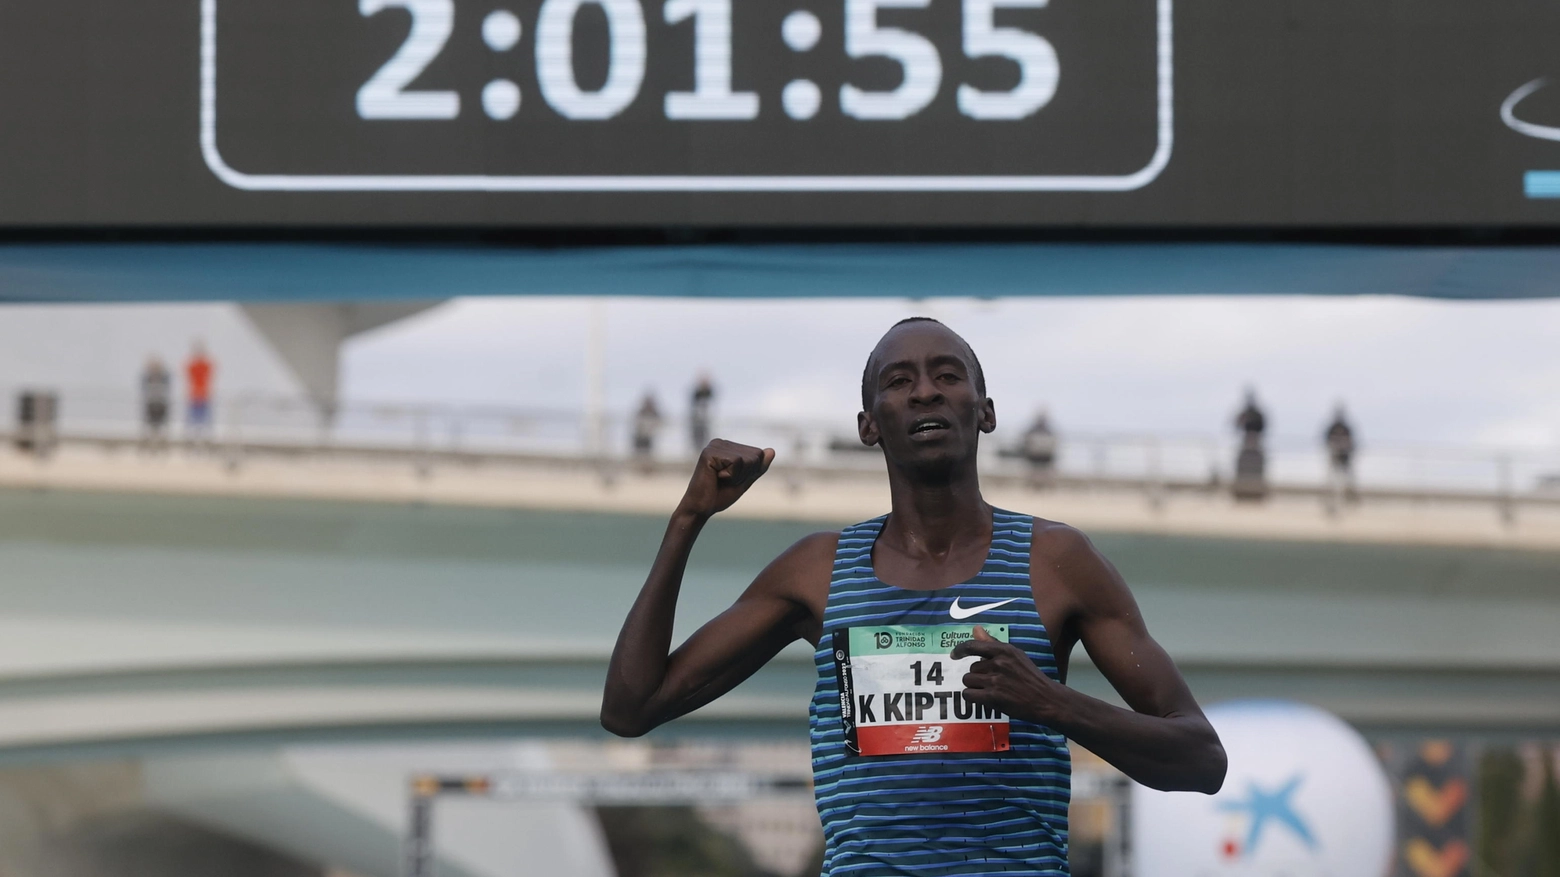 Il giovane keniano è il nuovo fenomeno della maratona, ha conquistato il record del mondo a Chicago e si prepara per l'assalto alle due ore